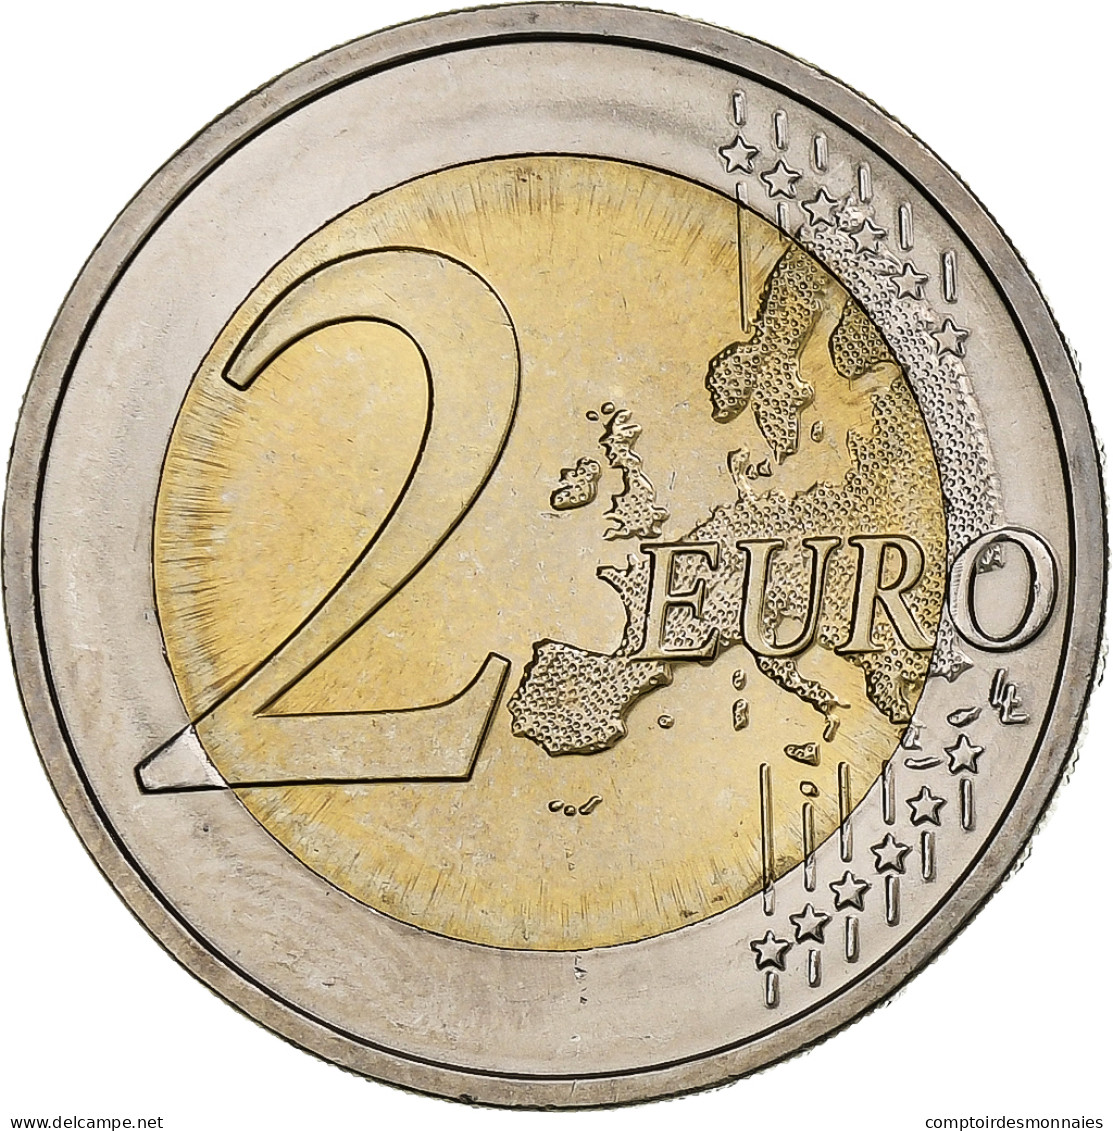 République Fédérale Allemande, 2 Euro, 2018, Stuttgart, Bimétallique, SPL - Deutschland